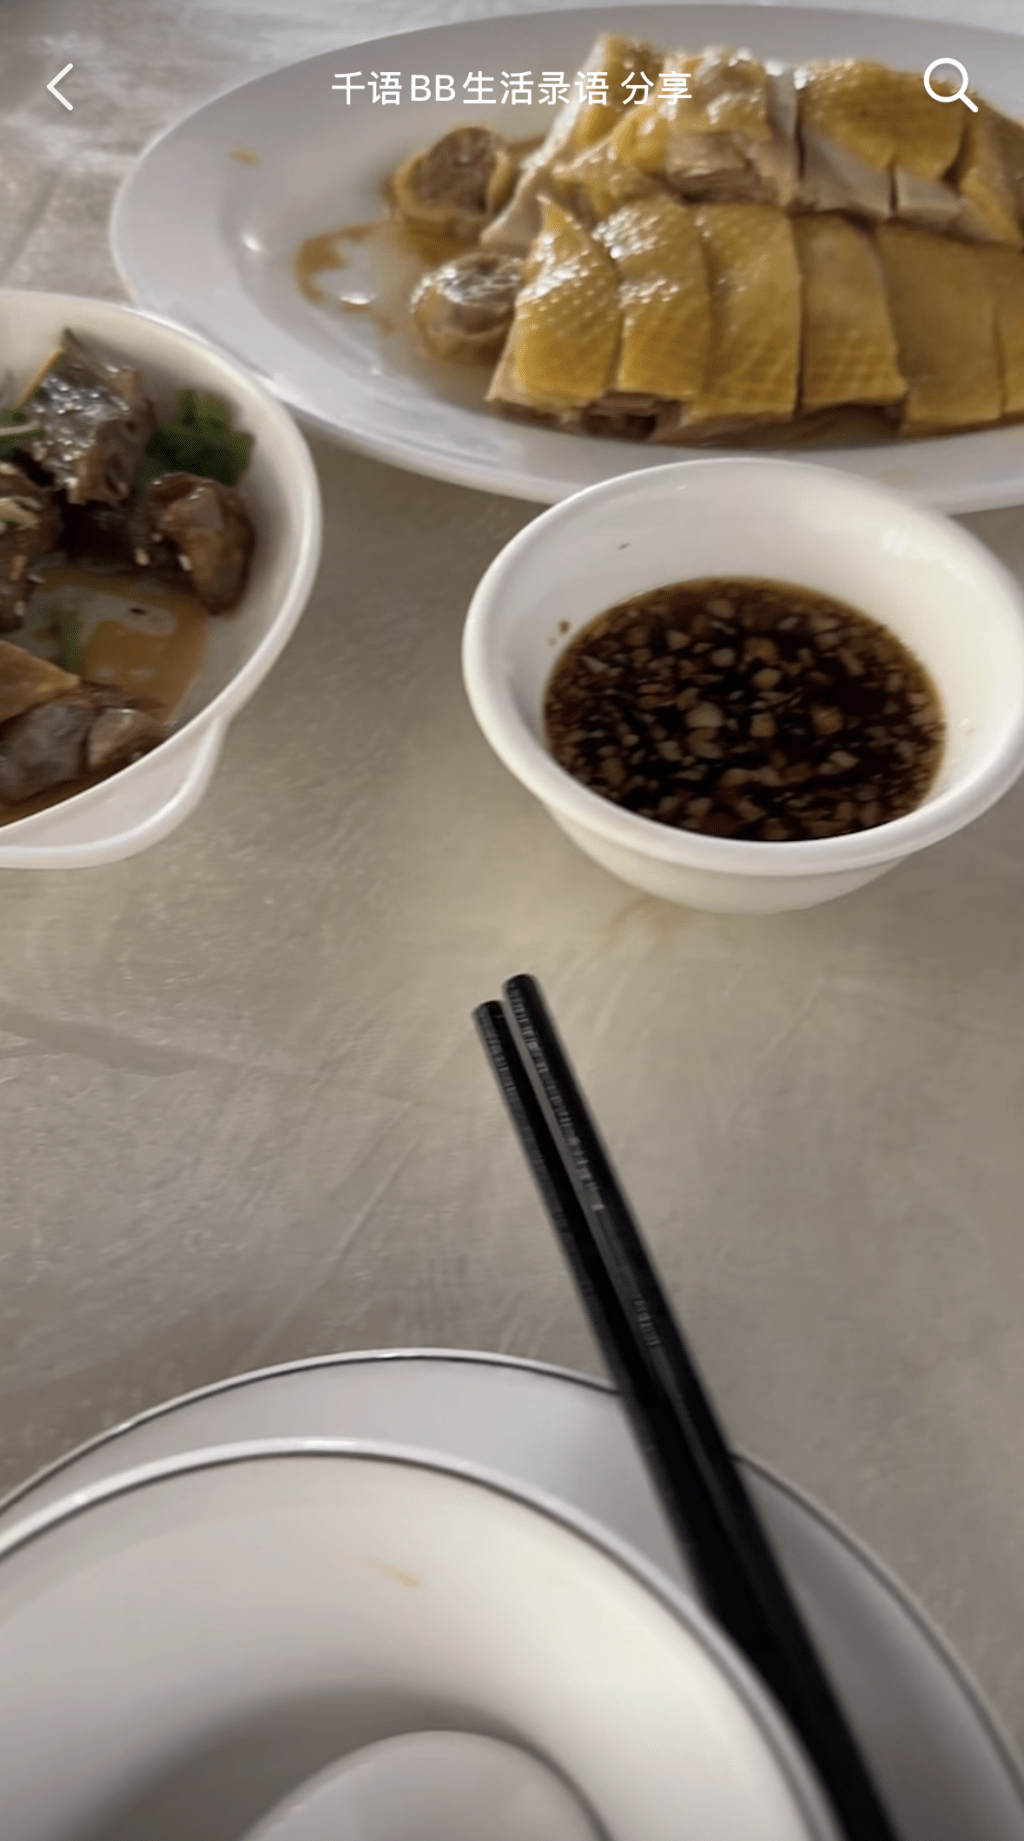 何太下午3時已返到陽江食飯，在粉絲群貼片報平安。